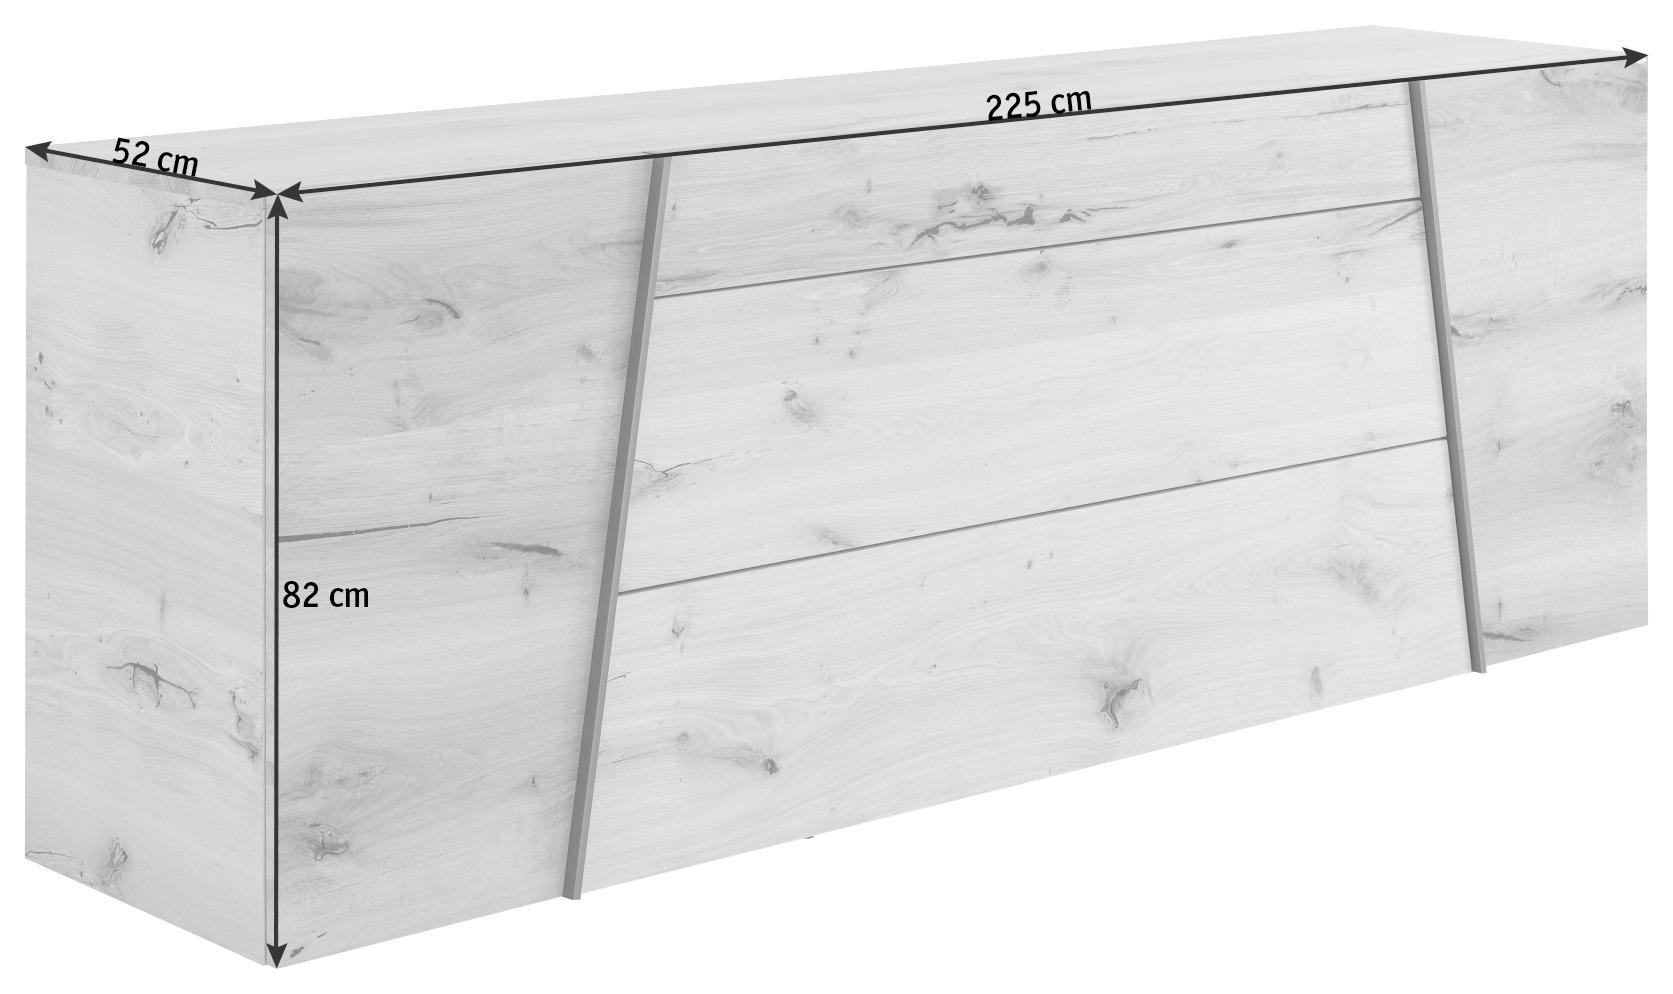 SIDEBOARD 225/82/52 cm  - Eichefarben/Grau, Natur, Holz/Holzwerkstoff (225/82/52cm) - Voglauer